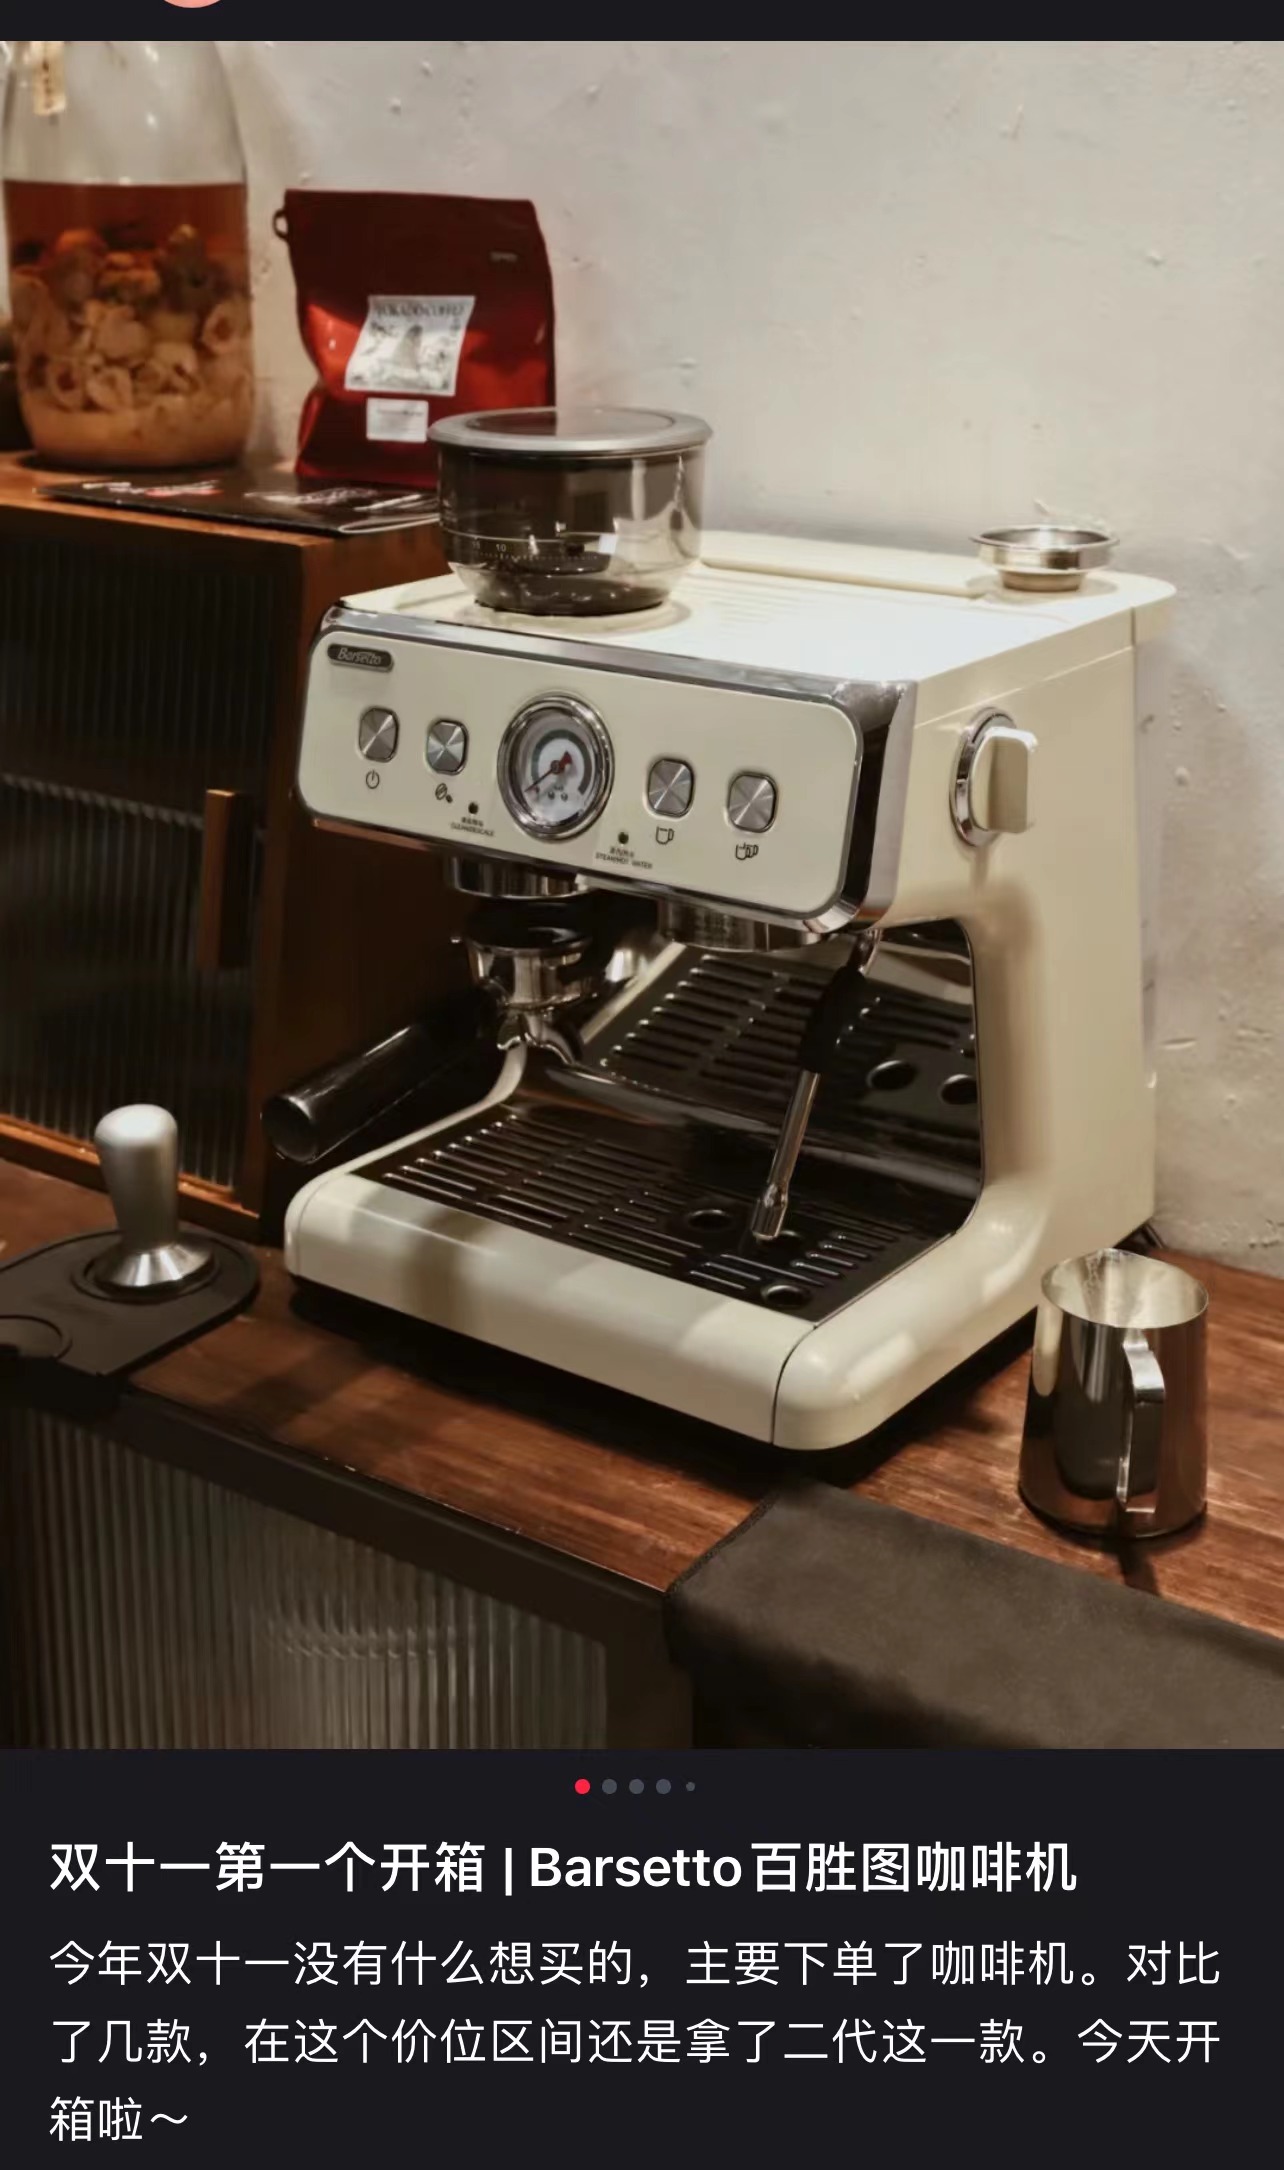 佛山咖啡机“霸榜” “爆款”背后带来何种思考？